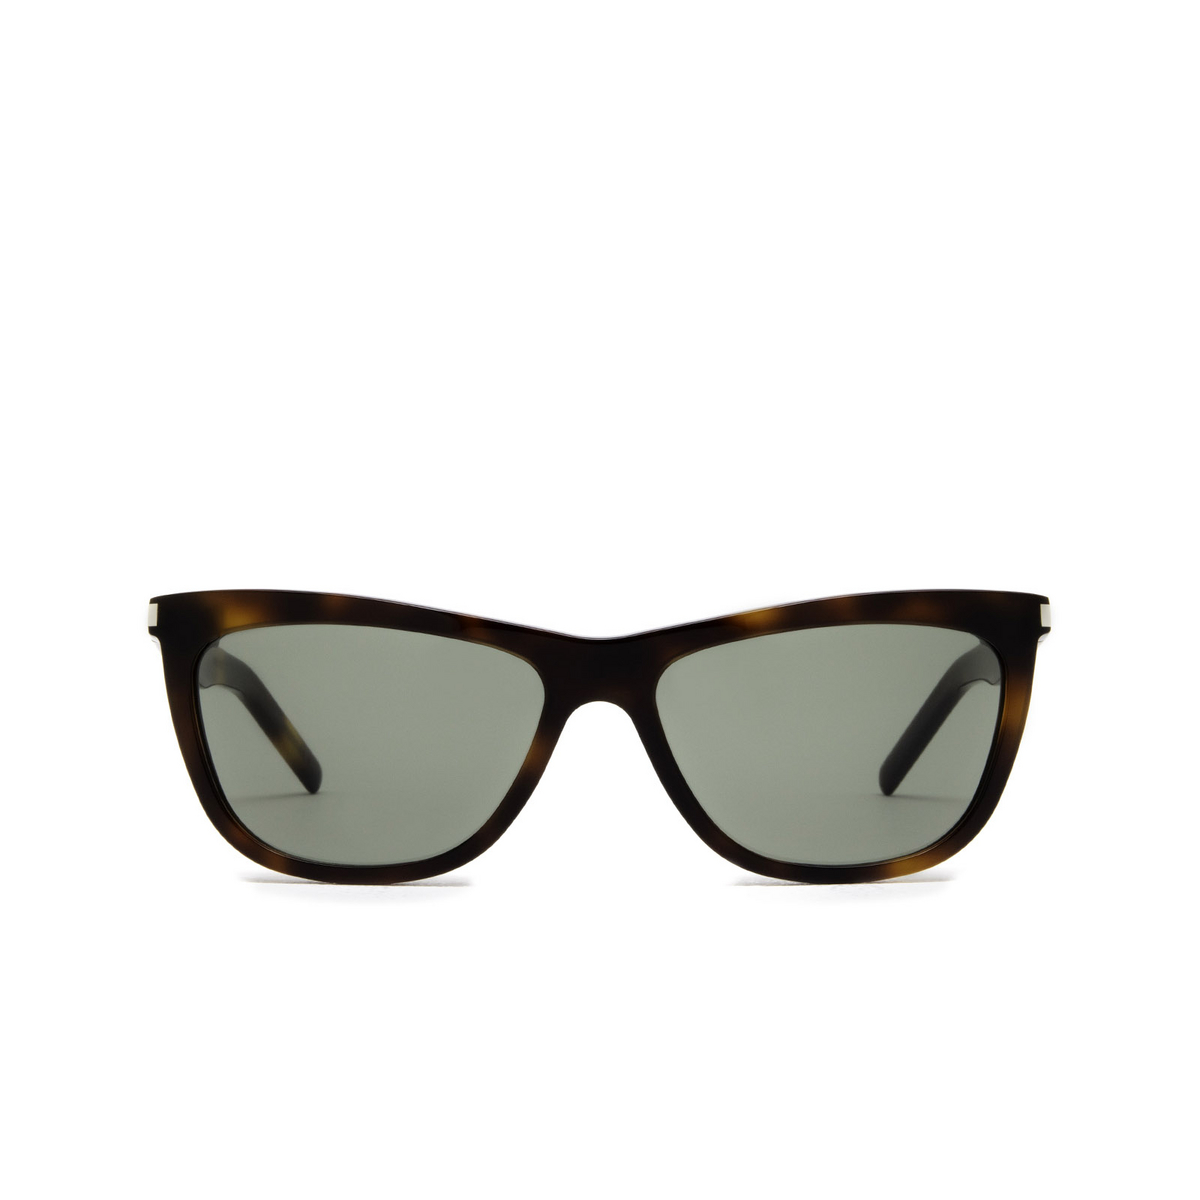 Saint Laurent® Cat-eye Sunglasses: SL 515 color Havana 003 - front view.